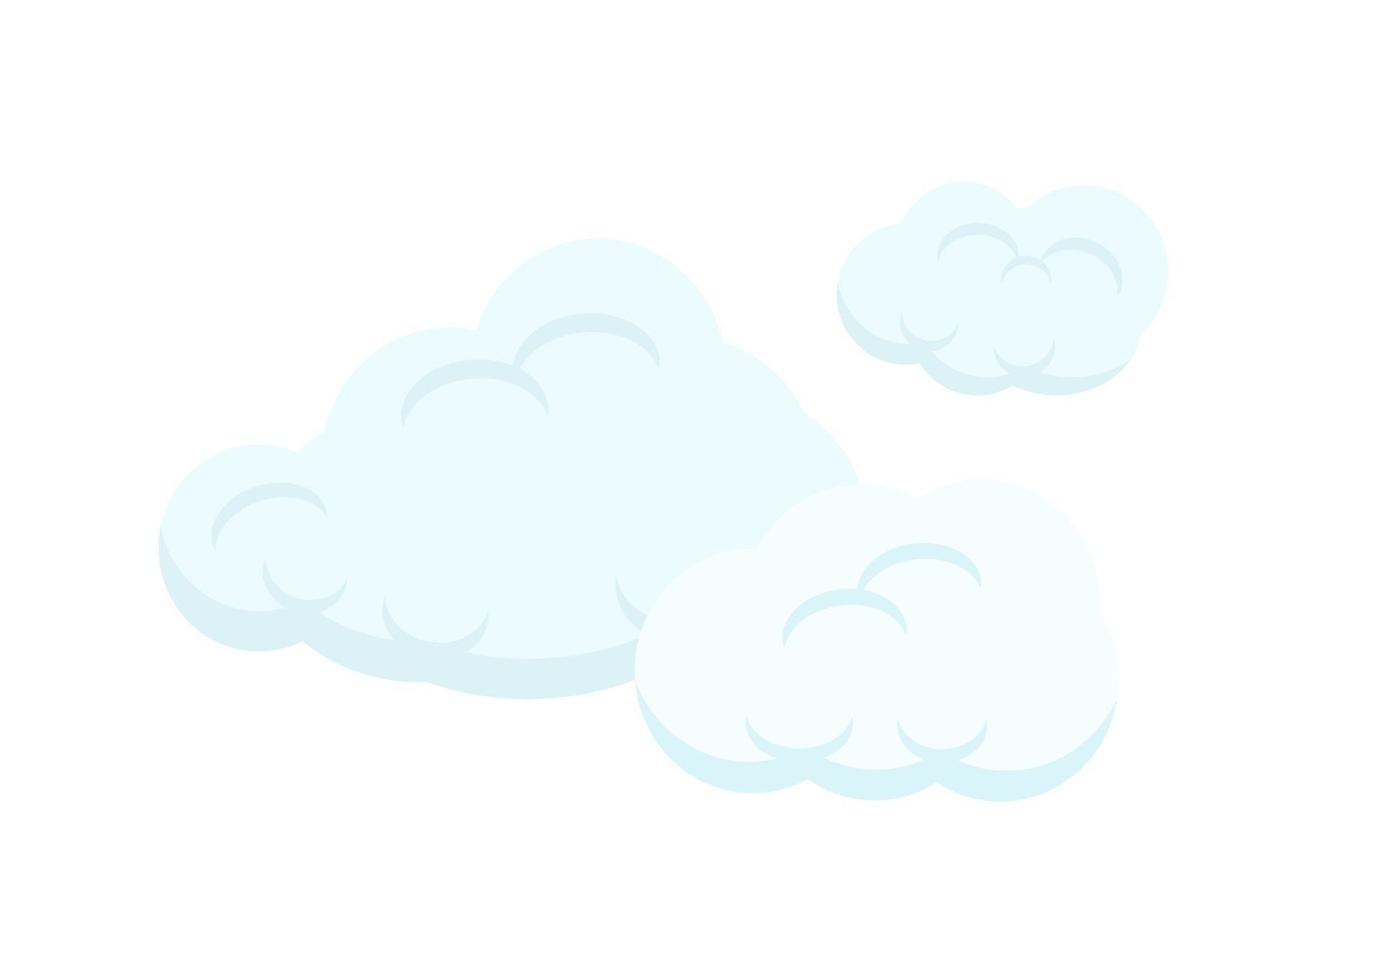 Sammlung von Cartoon-Blasenwolkenvektoren auf weißem Hintergrund vektor